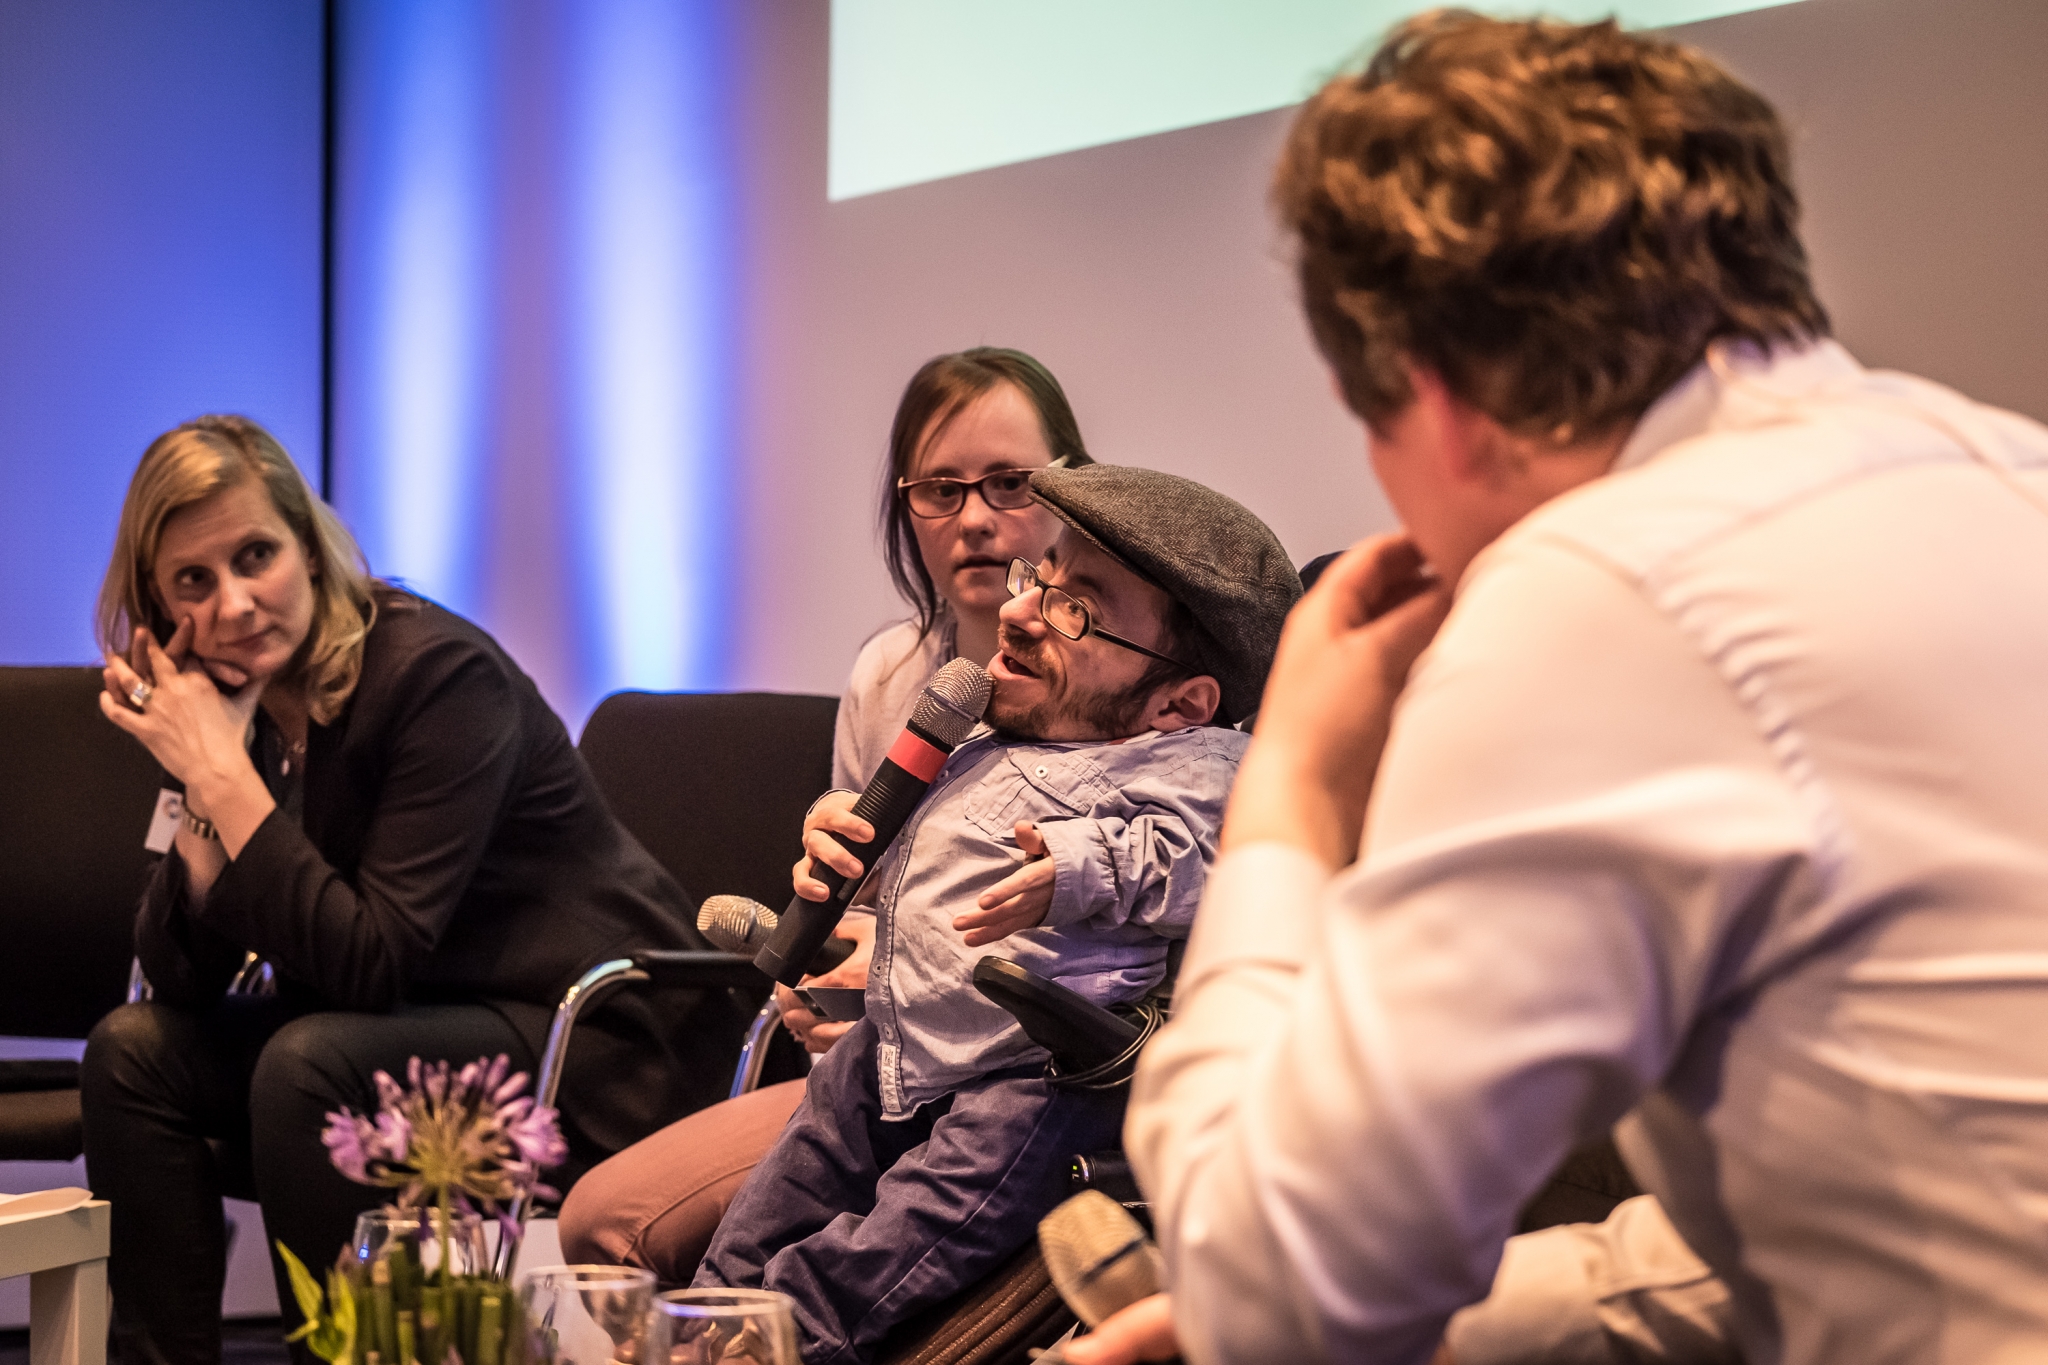 Podiumsgäste auf der Veranstaltung "Inklusion im Fernsehen" der Grimme Akademie bei RTL in Köln. Es spricht ein kleinwüchsiger Rollstuhlfahrer ins Mikro. Neben ihm sitzen eine Frau mit Down-Syndrom und eine nicht behinderte Frau. Der Moderator ist im Vordergrund zu sehen.